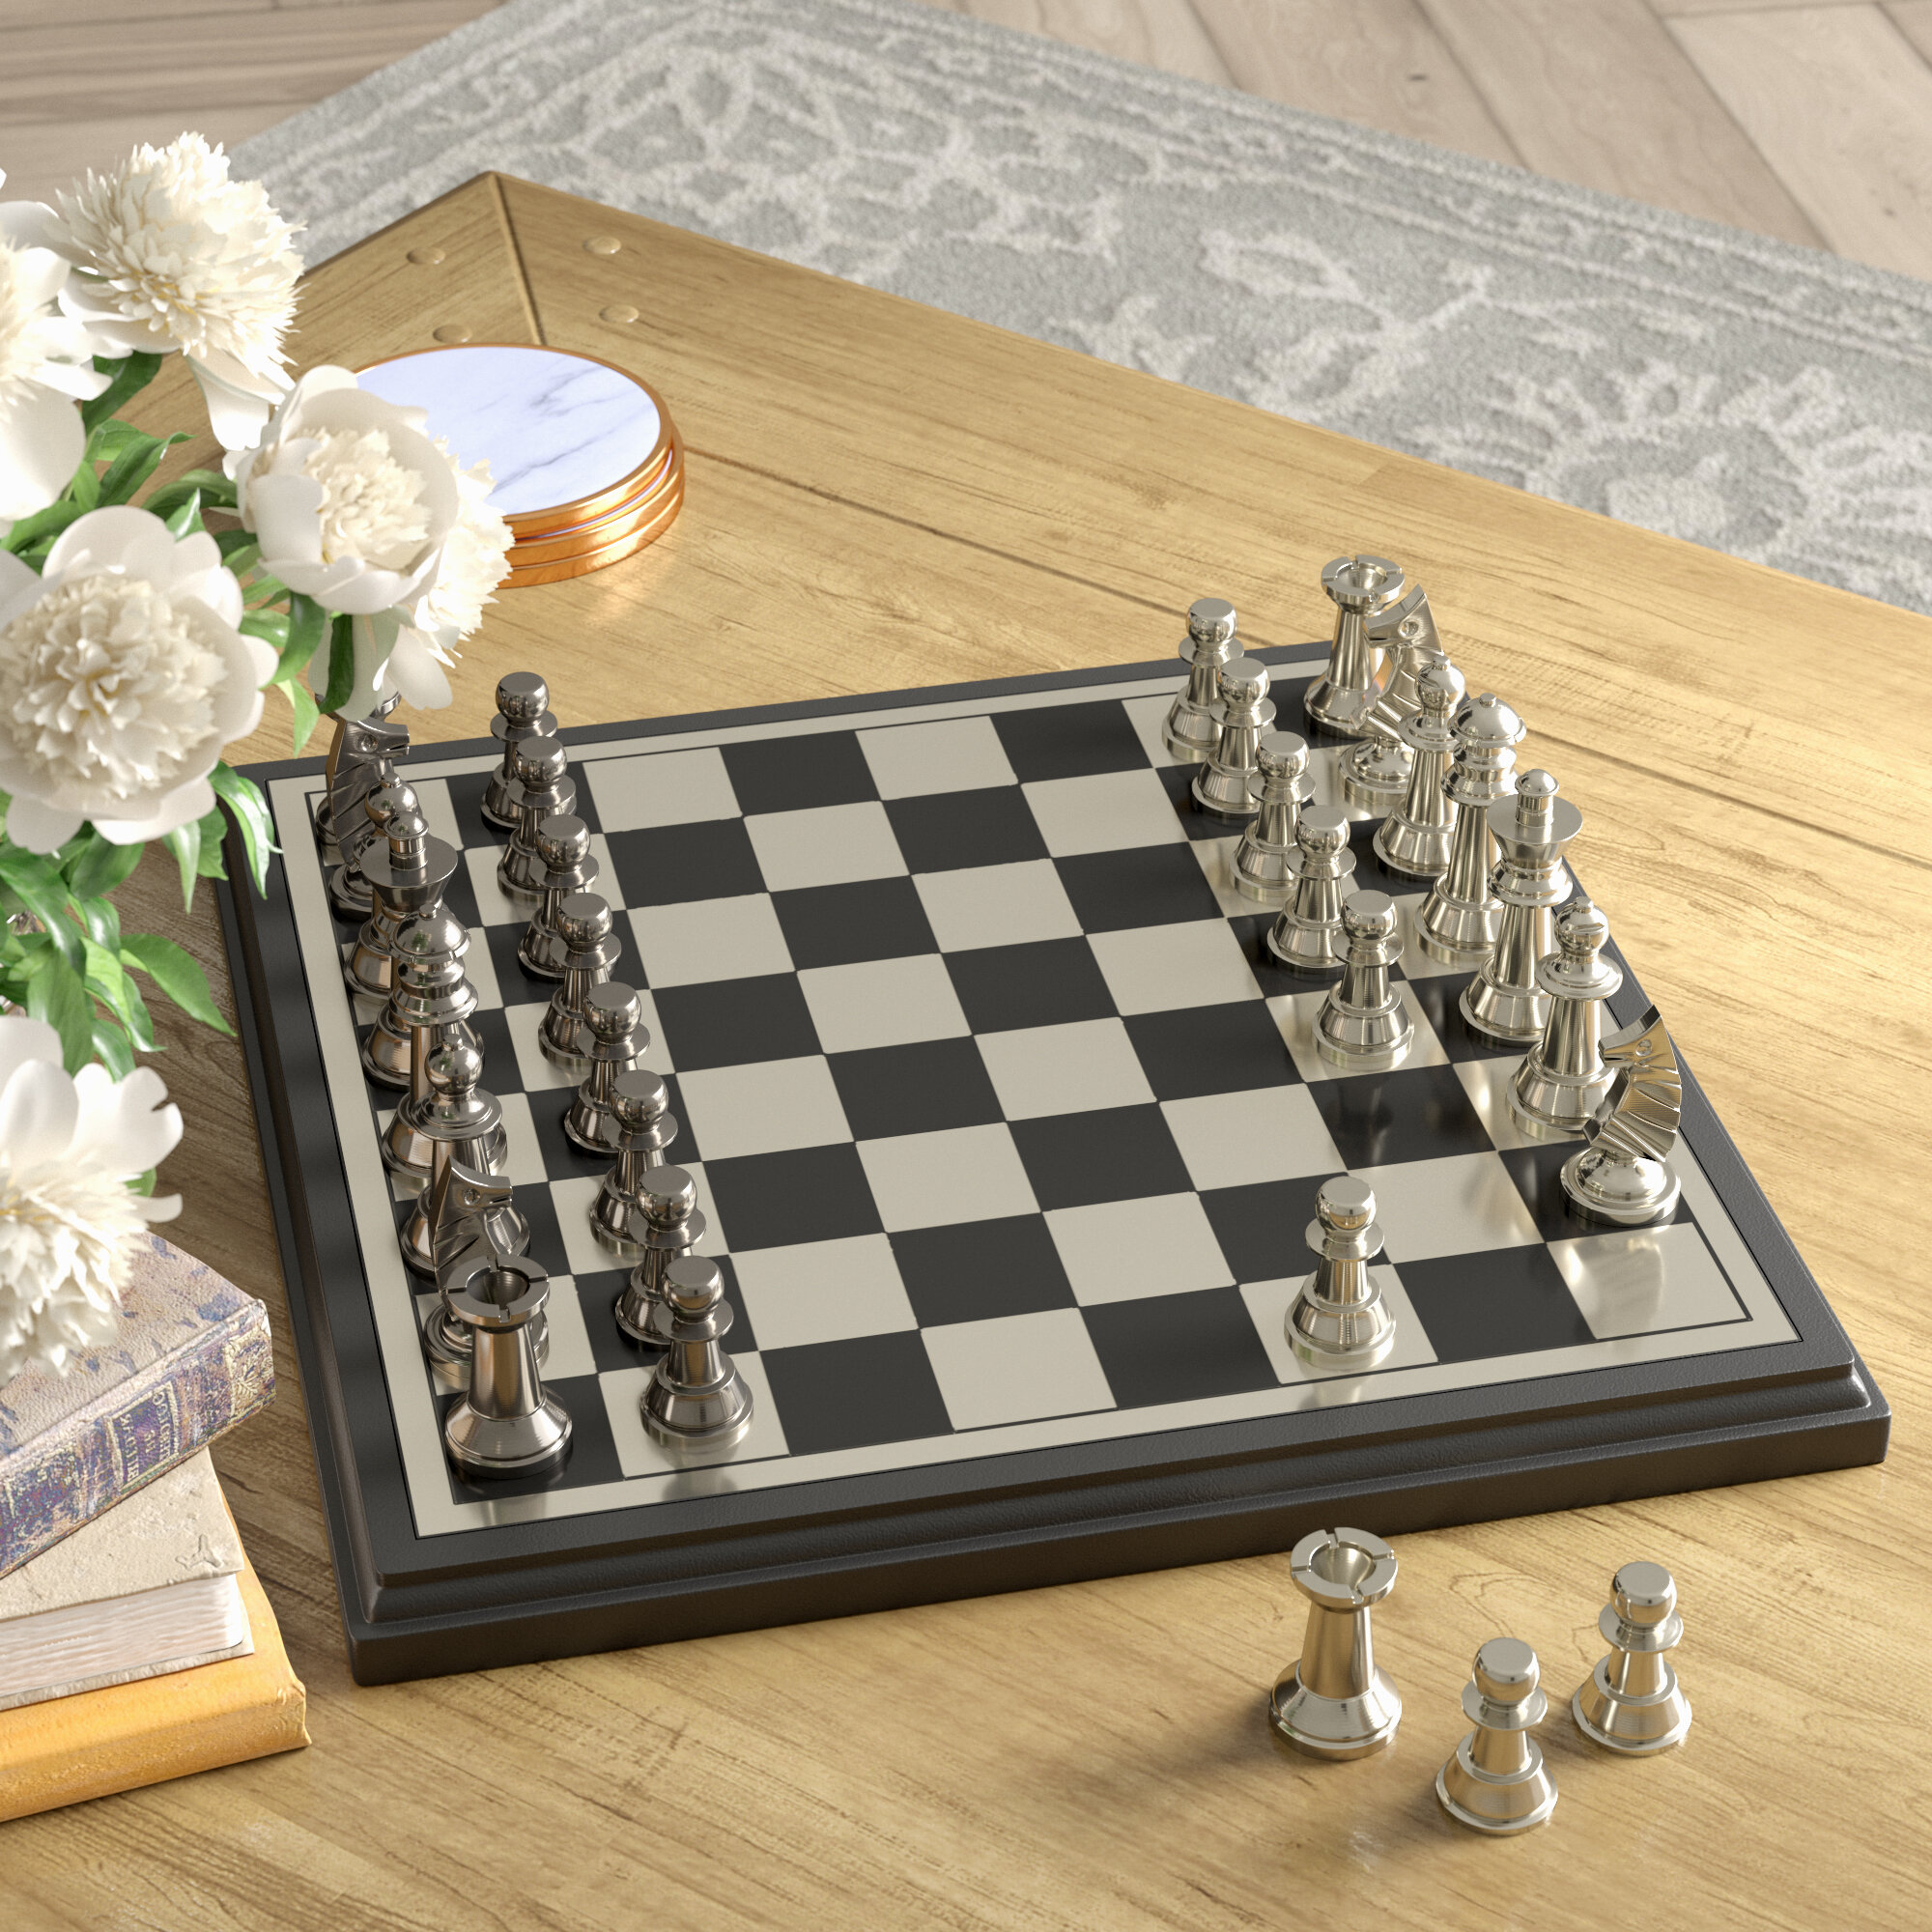 https://assets.wfcdn.com/im/36814314/compr-r85/9305/93055930/deardra-red-barrel-studio-2-player-chess.jpg